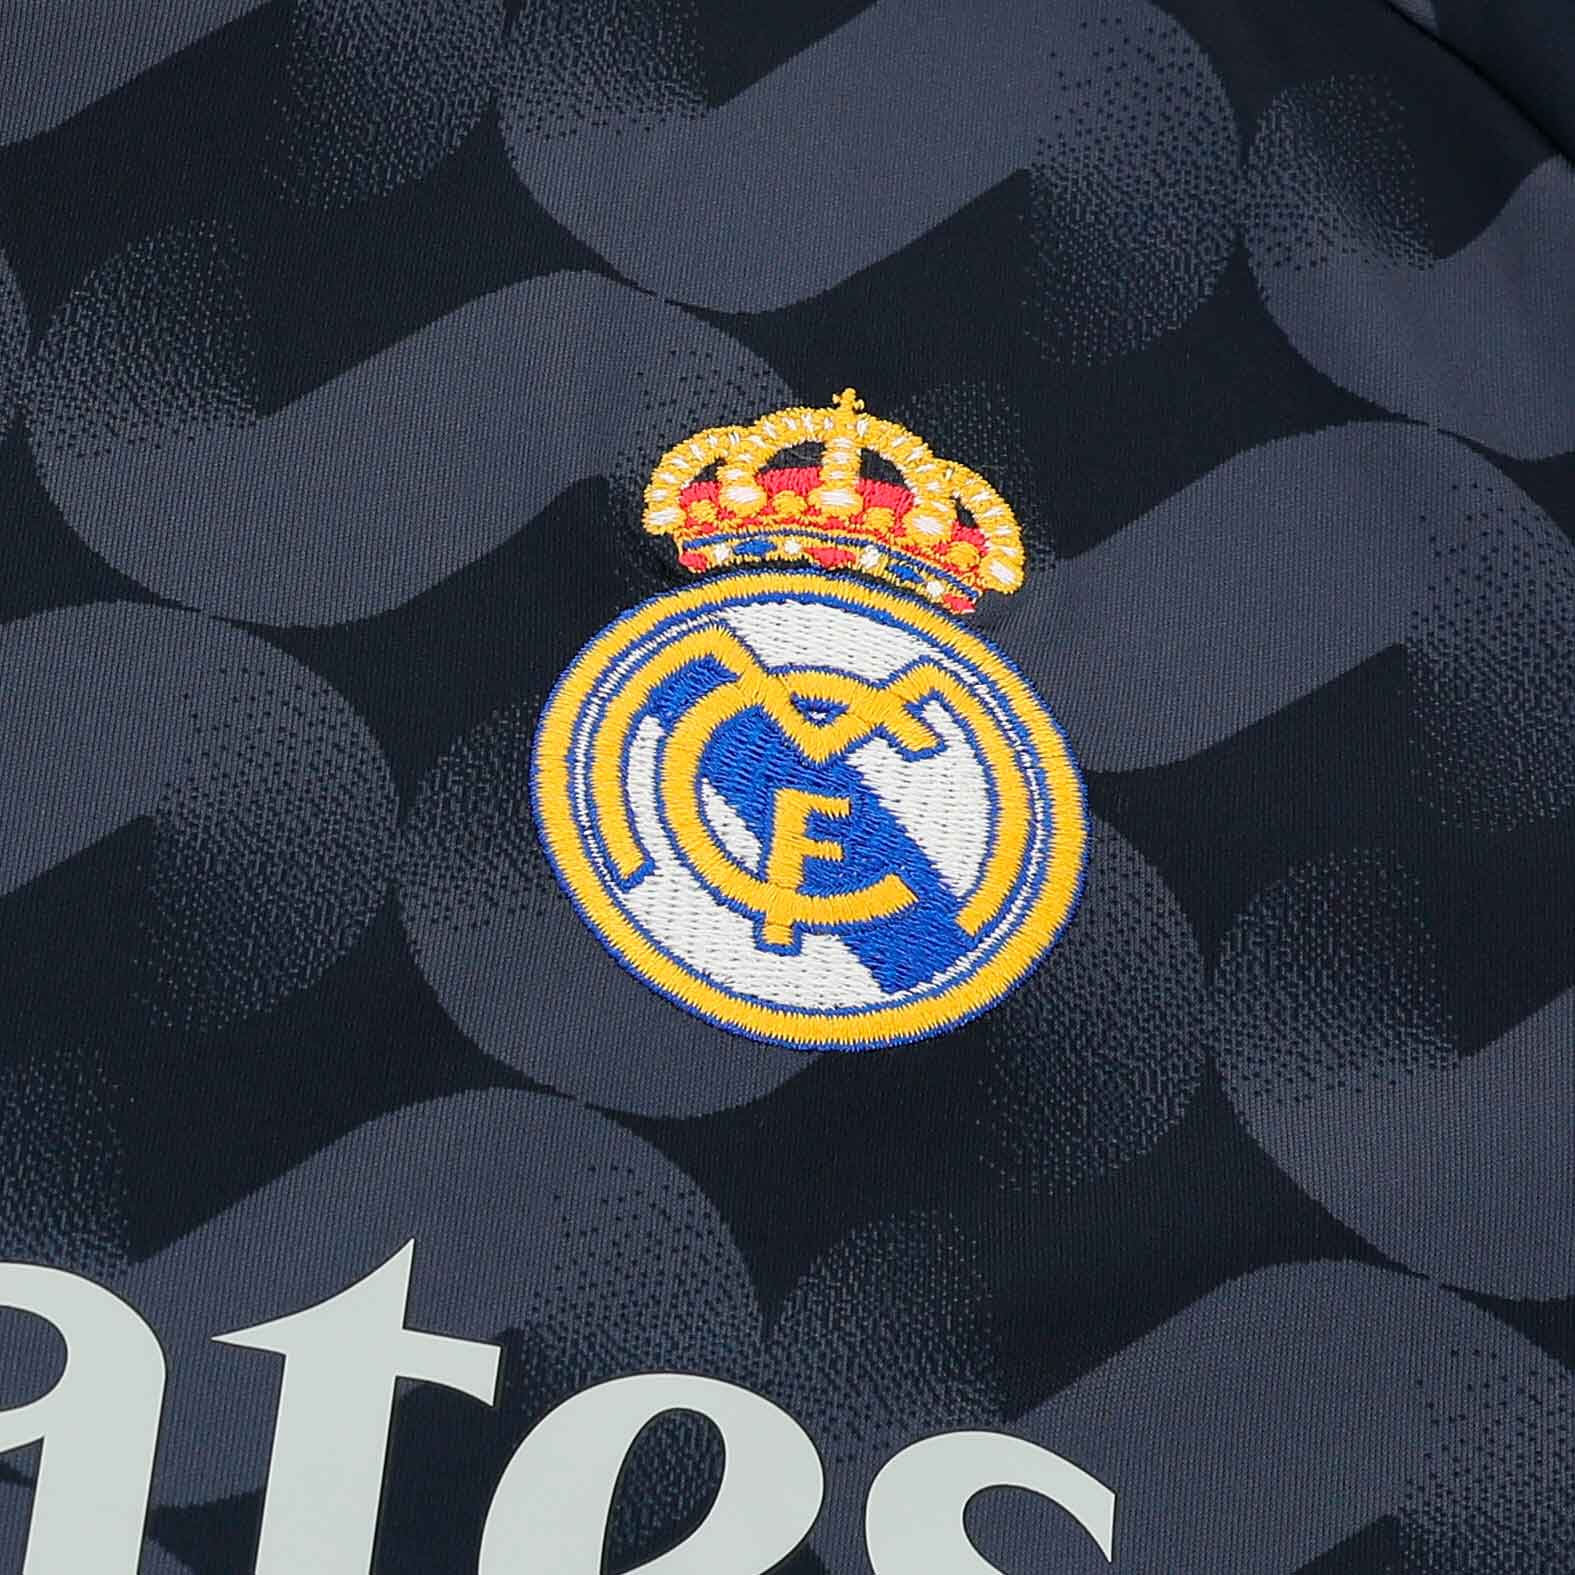 adidas Camiseta Visitante Real Madrid 23/24, NEGRO, hi-res